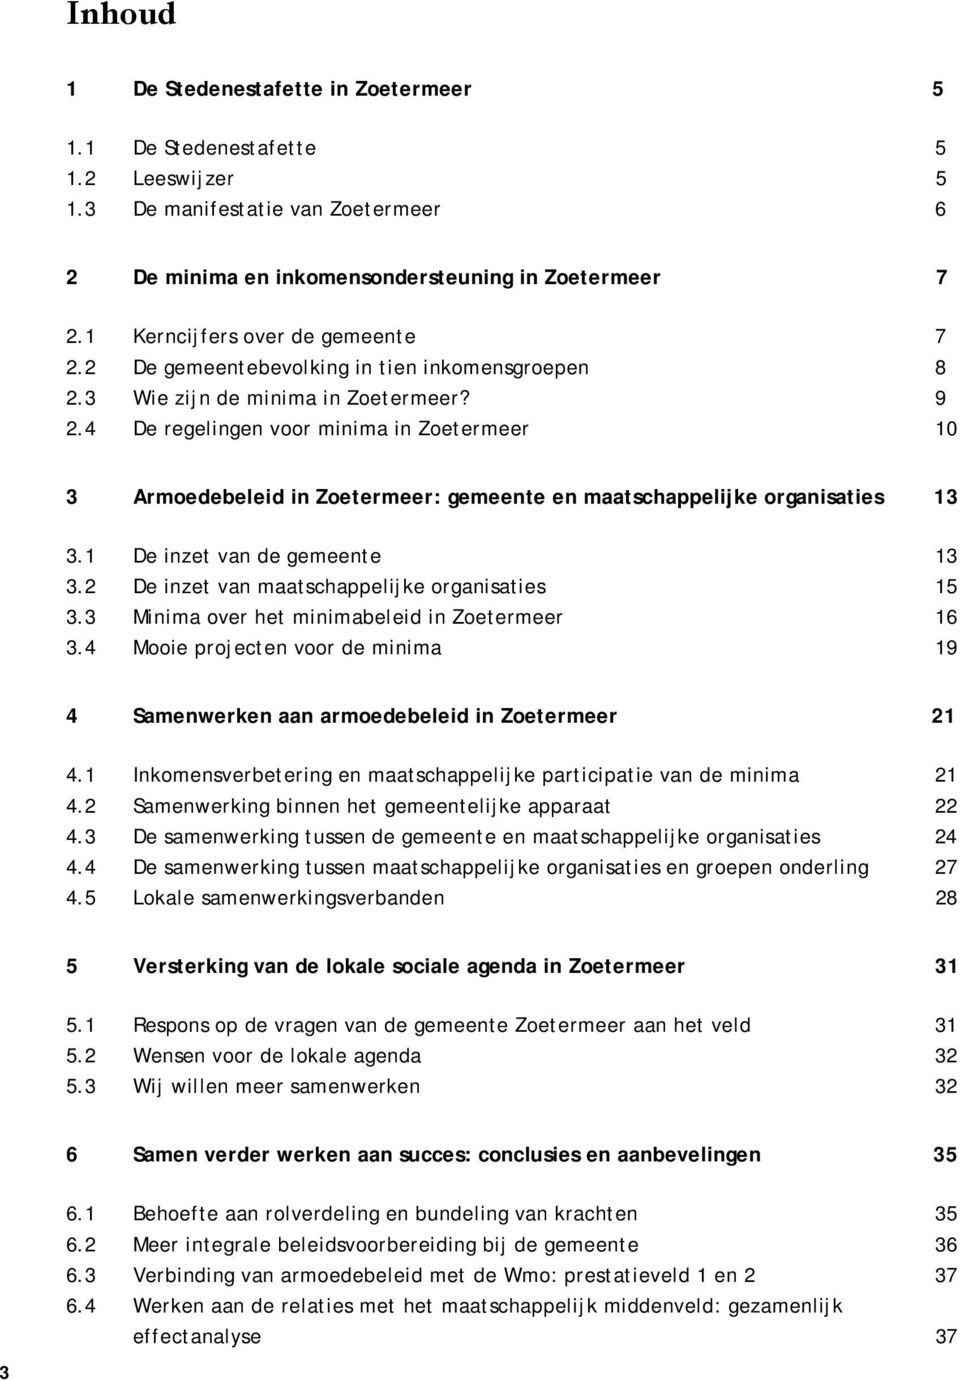 4 De regelingen voor minima in Zoetermeer 0 3 Armoedebeleid in Zoetermeer: gemeente en maatschappelijke organisaties 3 3. De inzet van de gemeente 3 3.2 De inzet van maatschappelijke organisaties 5 3.